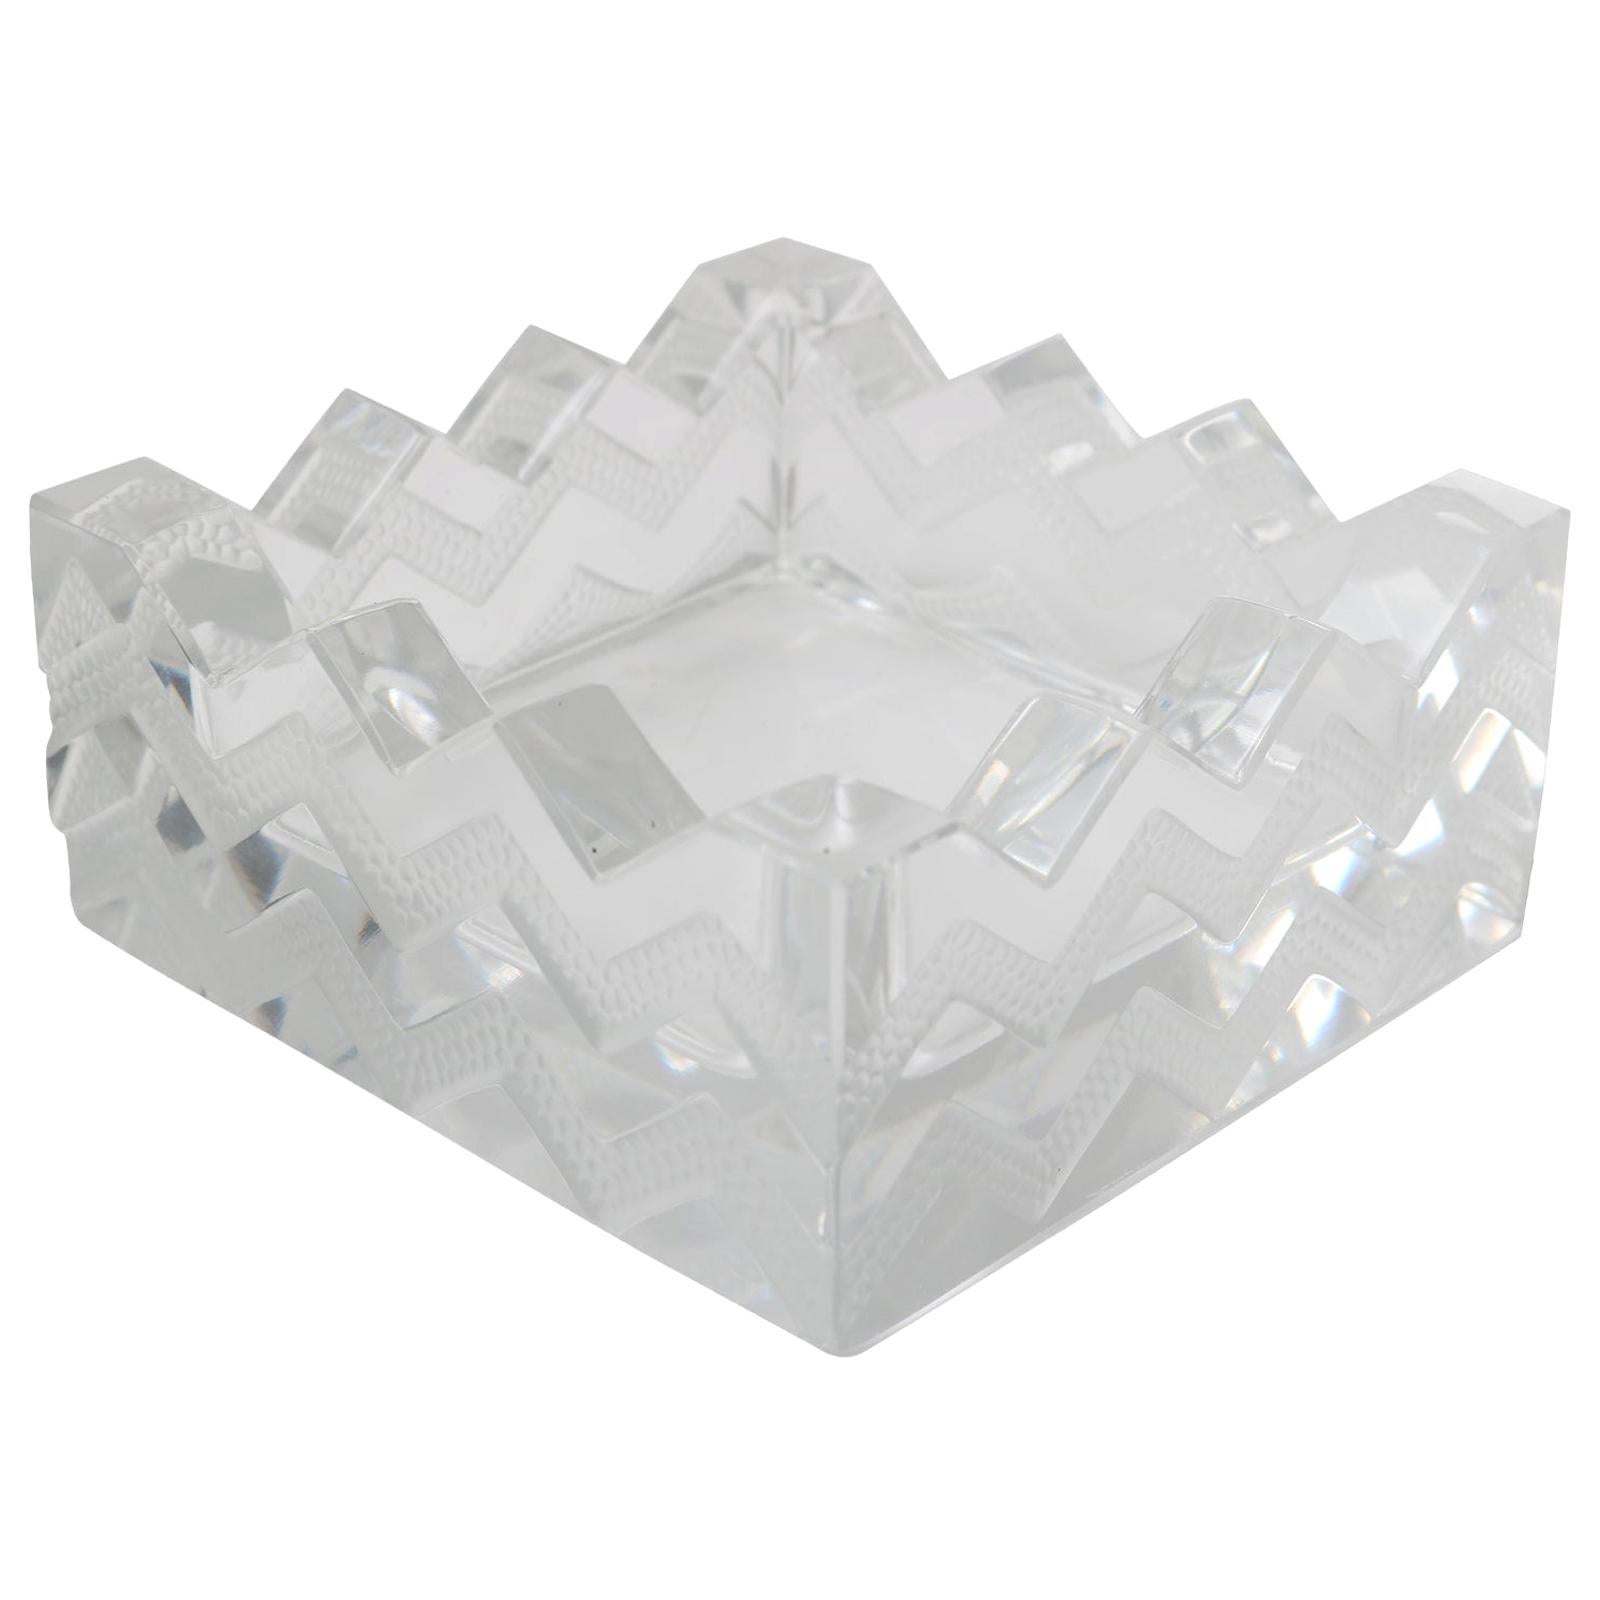 Crystal "Sudan" Ash Tray by Lalique